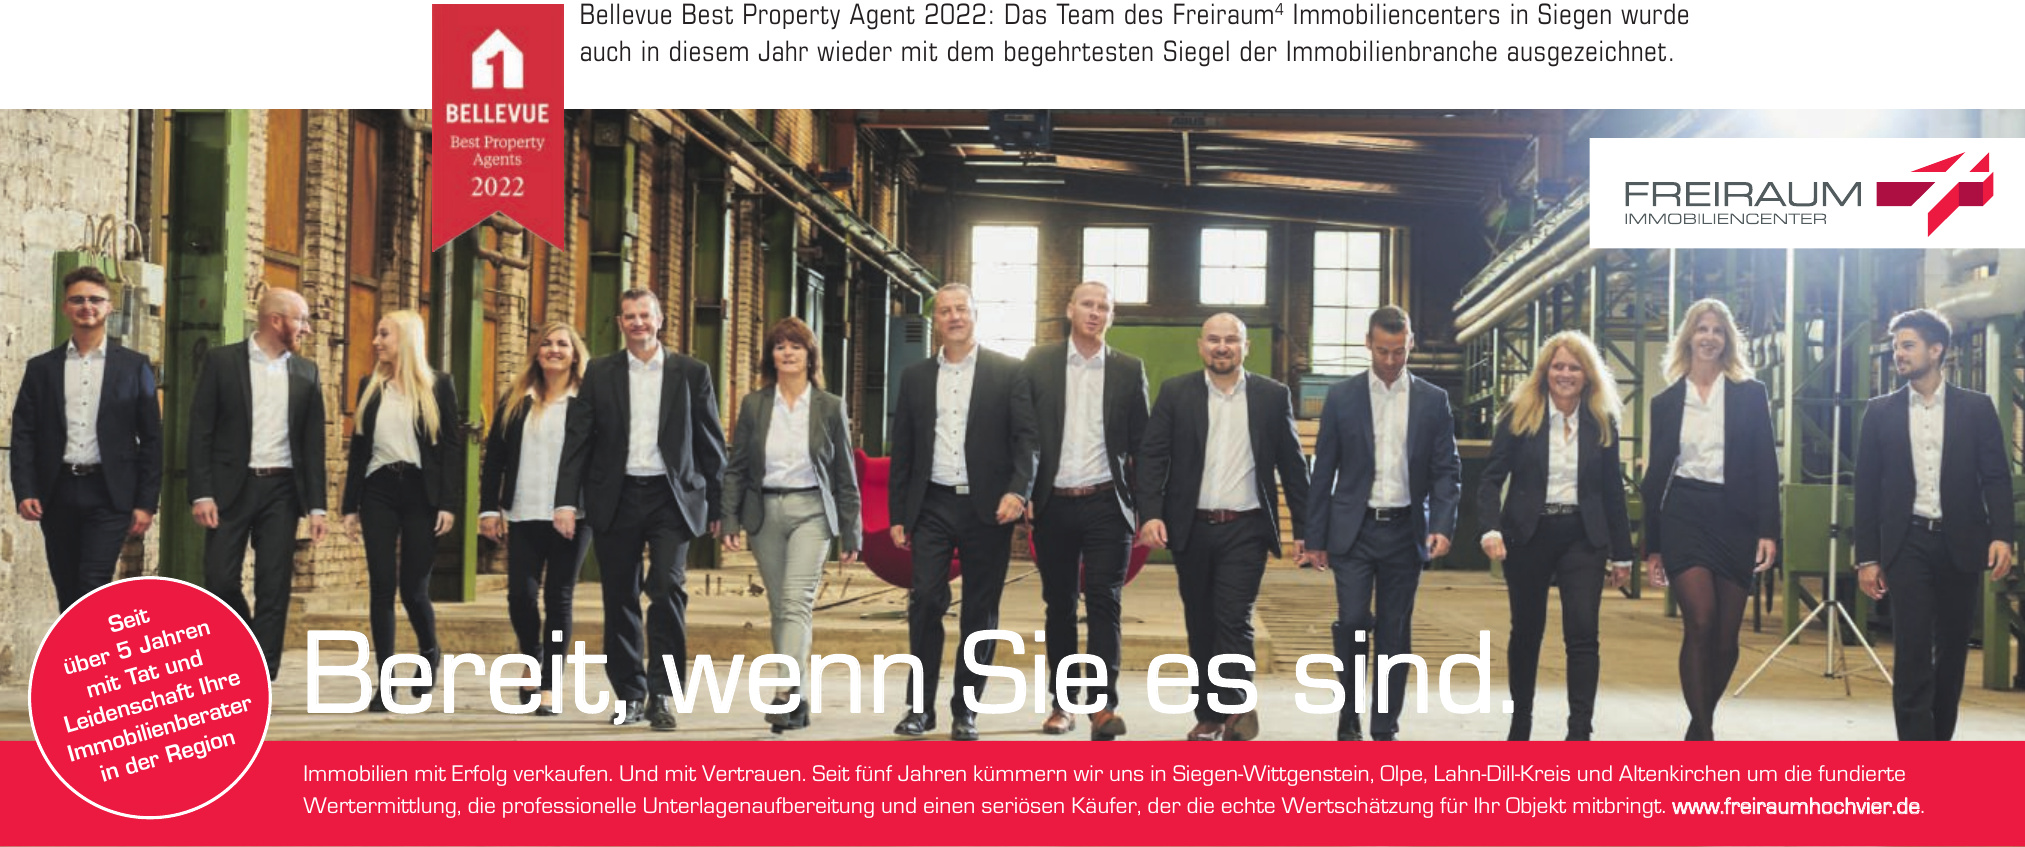 FREIRAUM4 GmbH & Co. KG